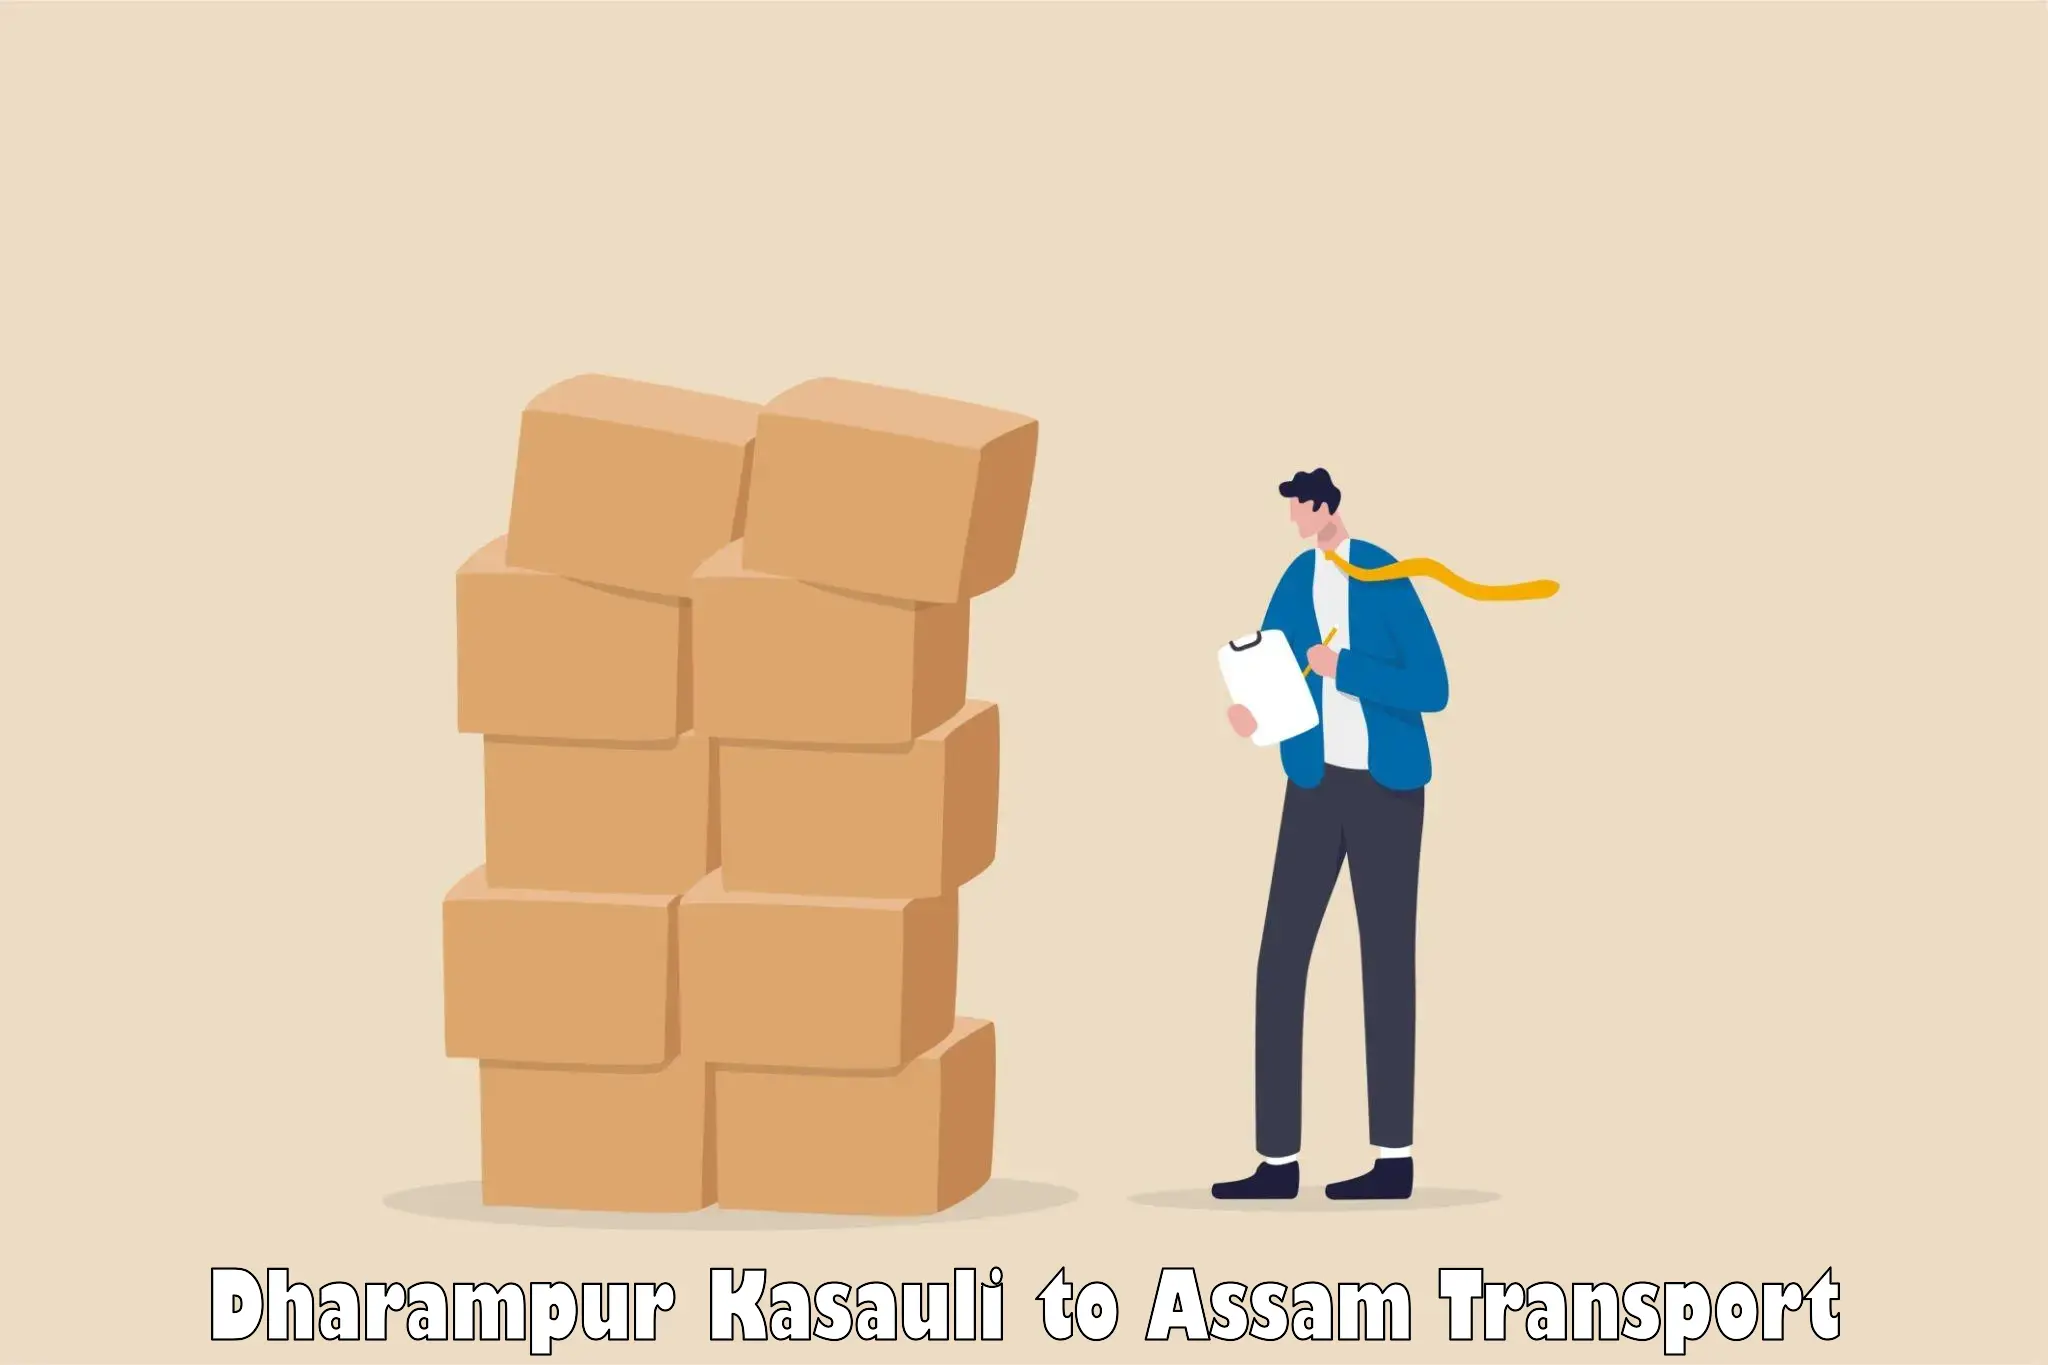 Vehicle transport services Dharampur Kasauli to Kusumtola